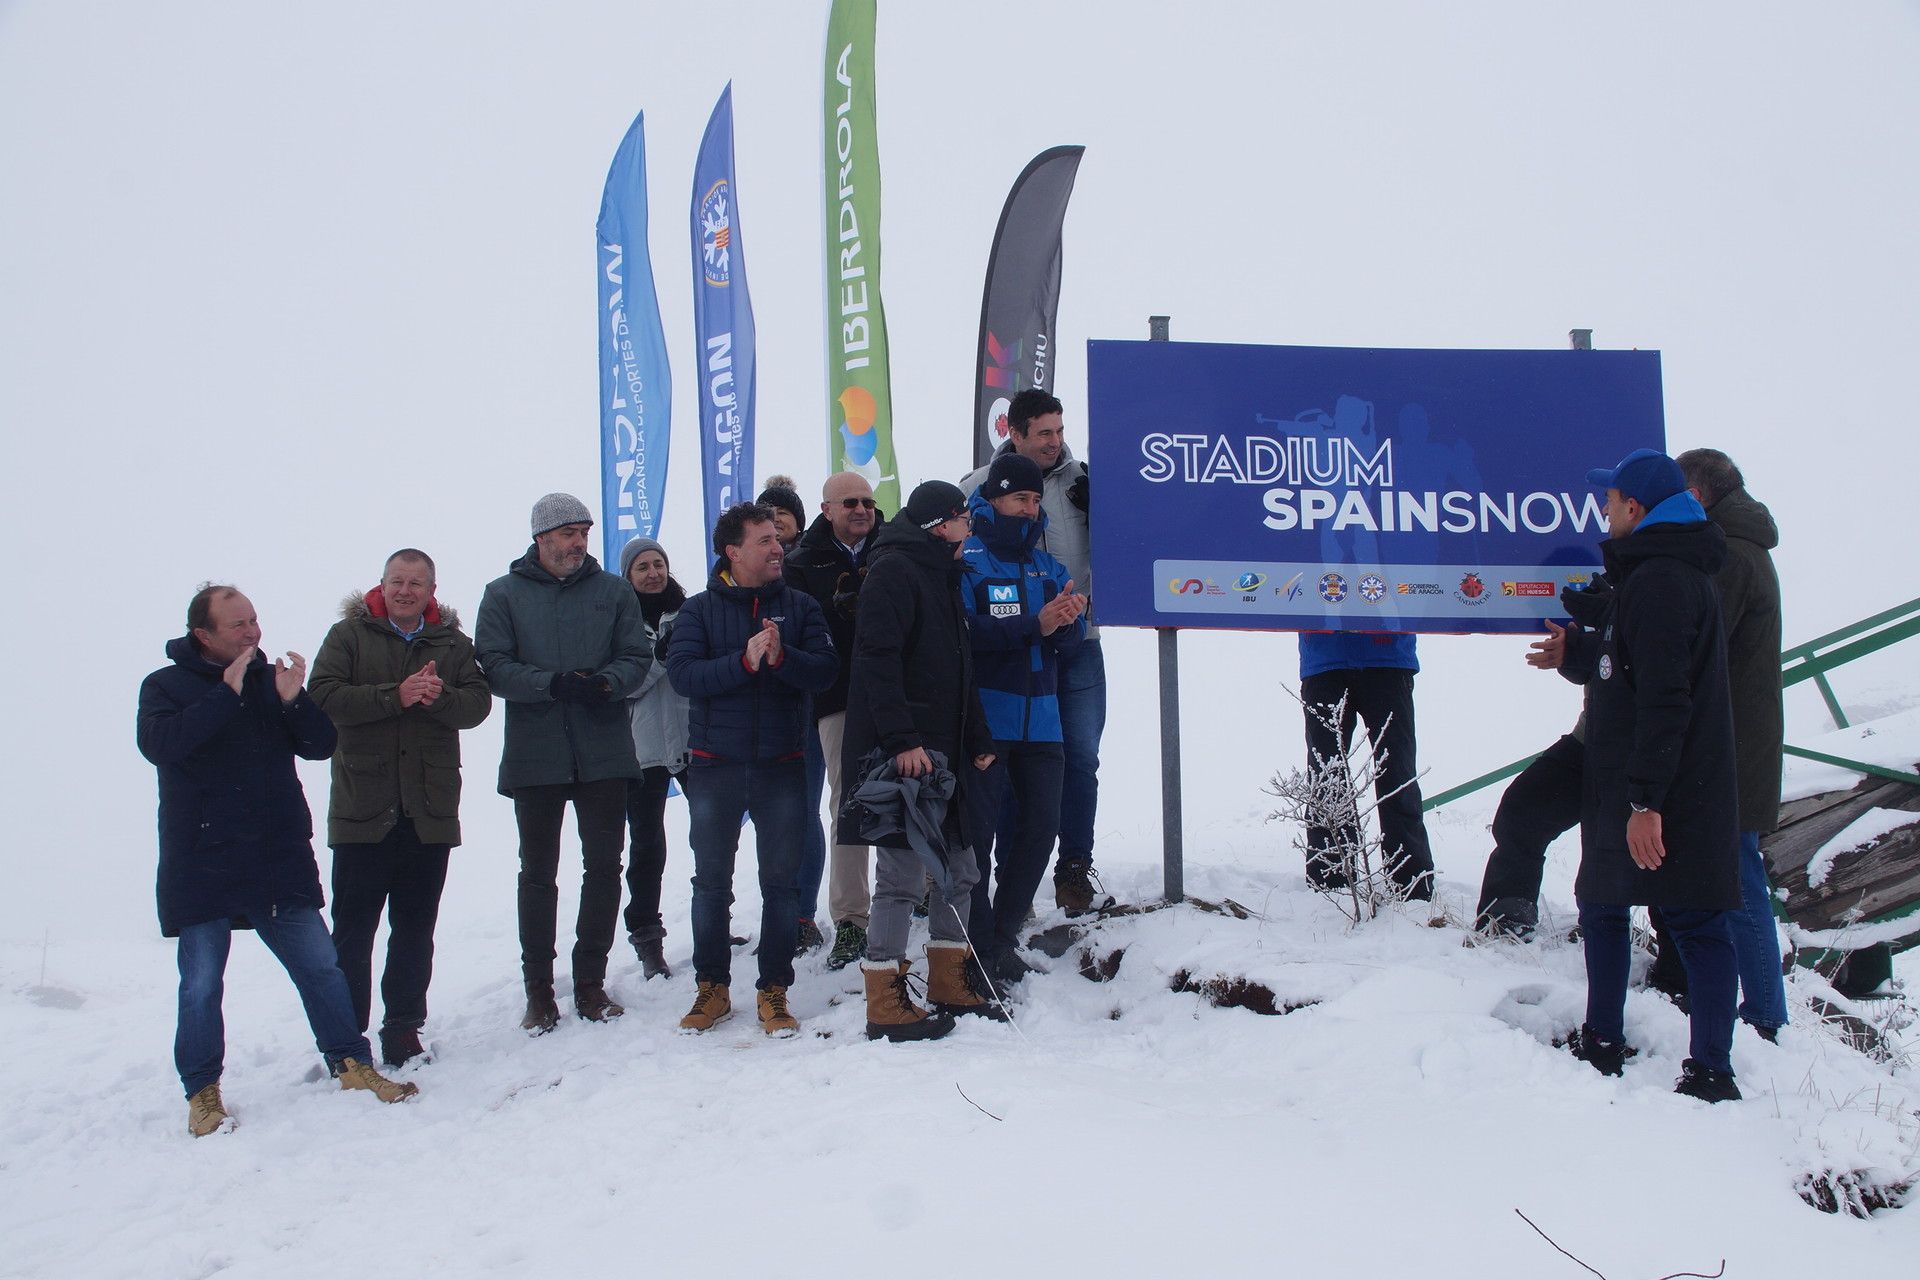 Noticias Nevasport - Toda actualidad de la nieve, esquí y montaña